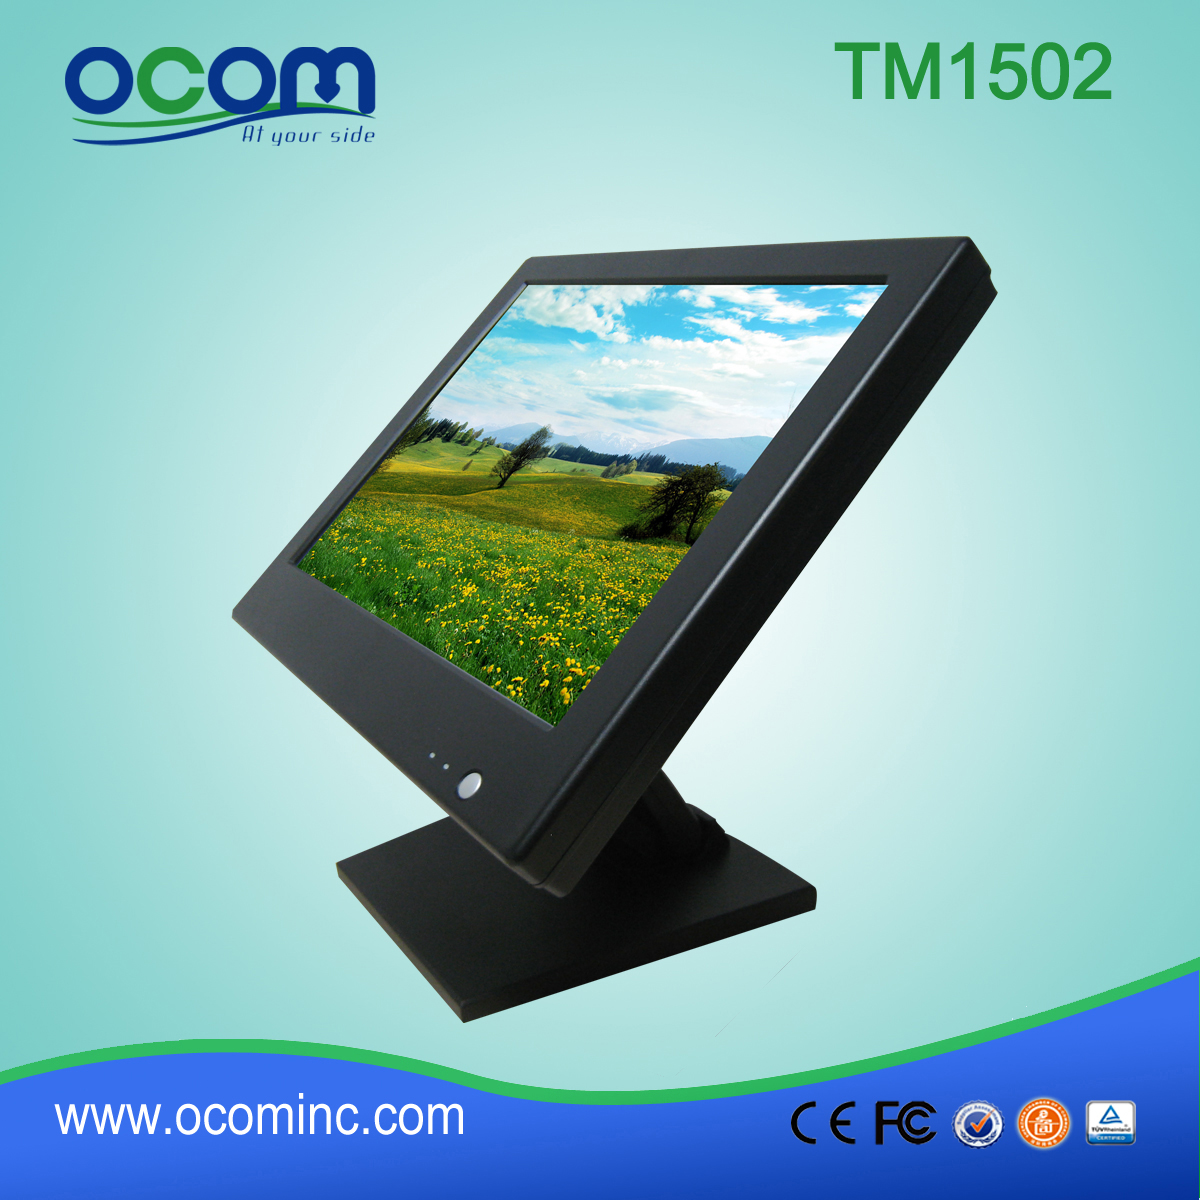 TM1502 Waterdicht LCD Monitor uit China fabriek